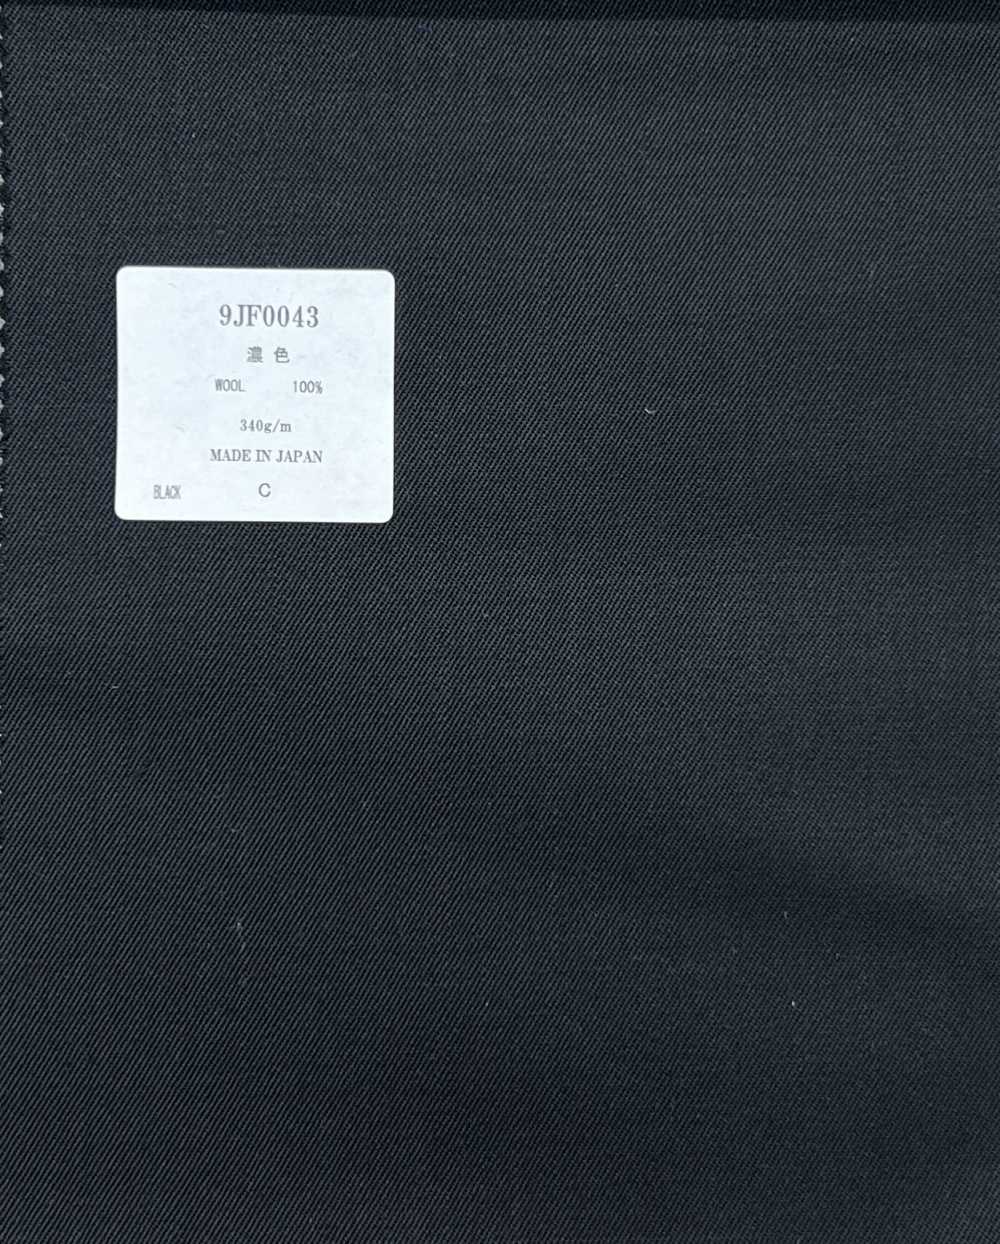 9JF0043 日本製造的布料[面料]